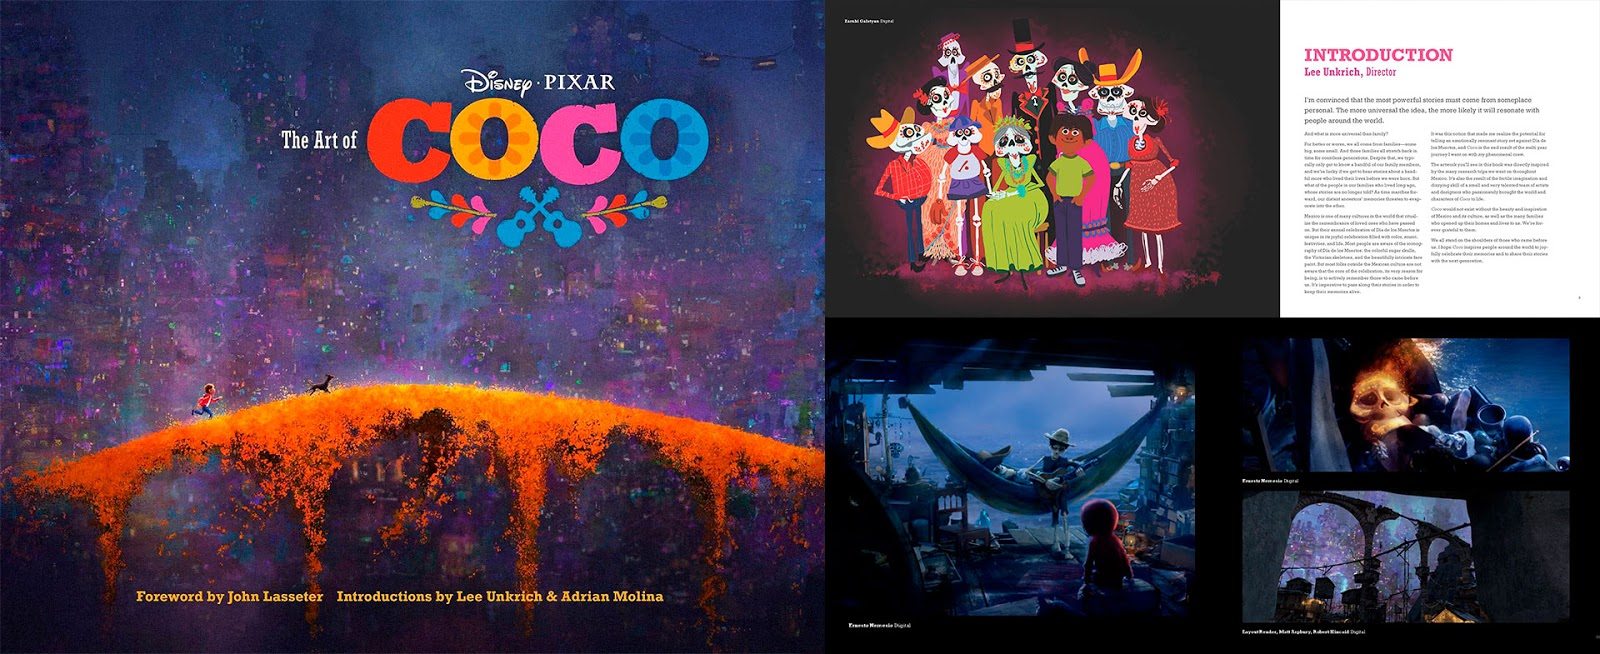 El arte de Coco LIBRO: Desarrollo Visual y libro de Art Of Coco (Película de Disney) Diseño de Personajes, Concept Art y Making of